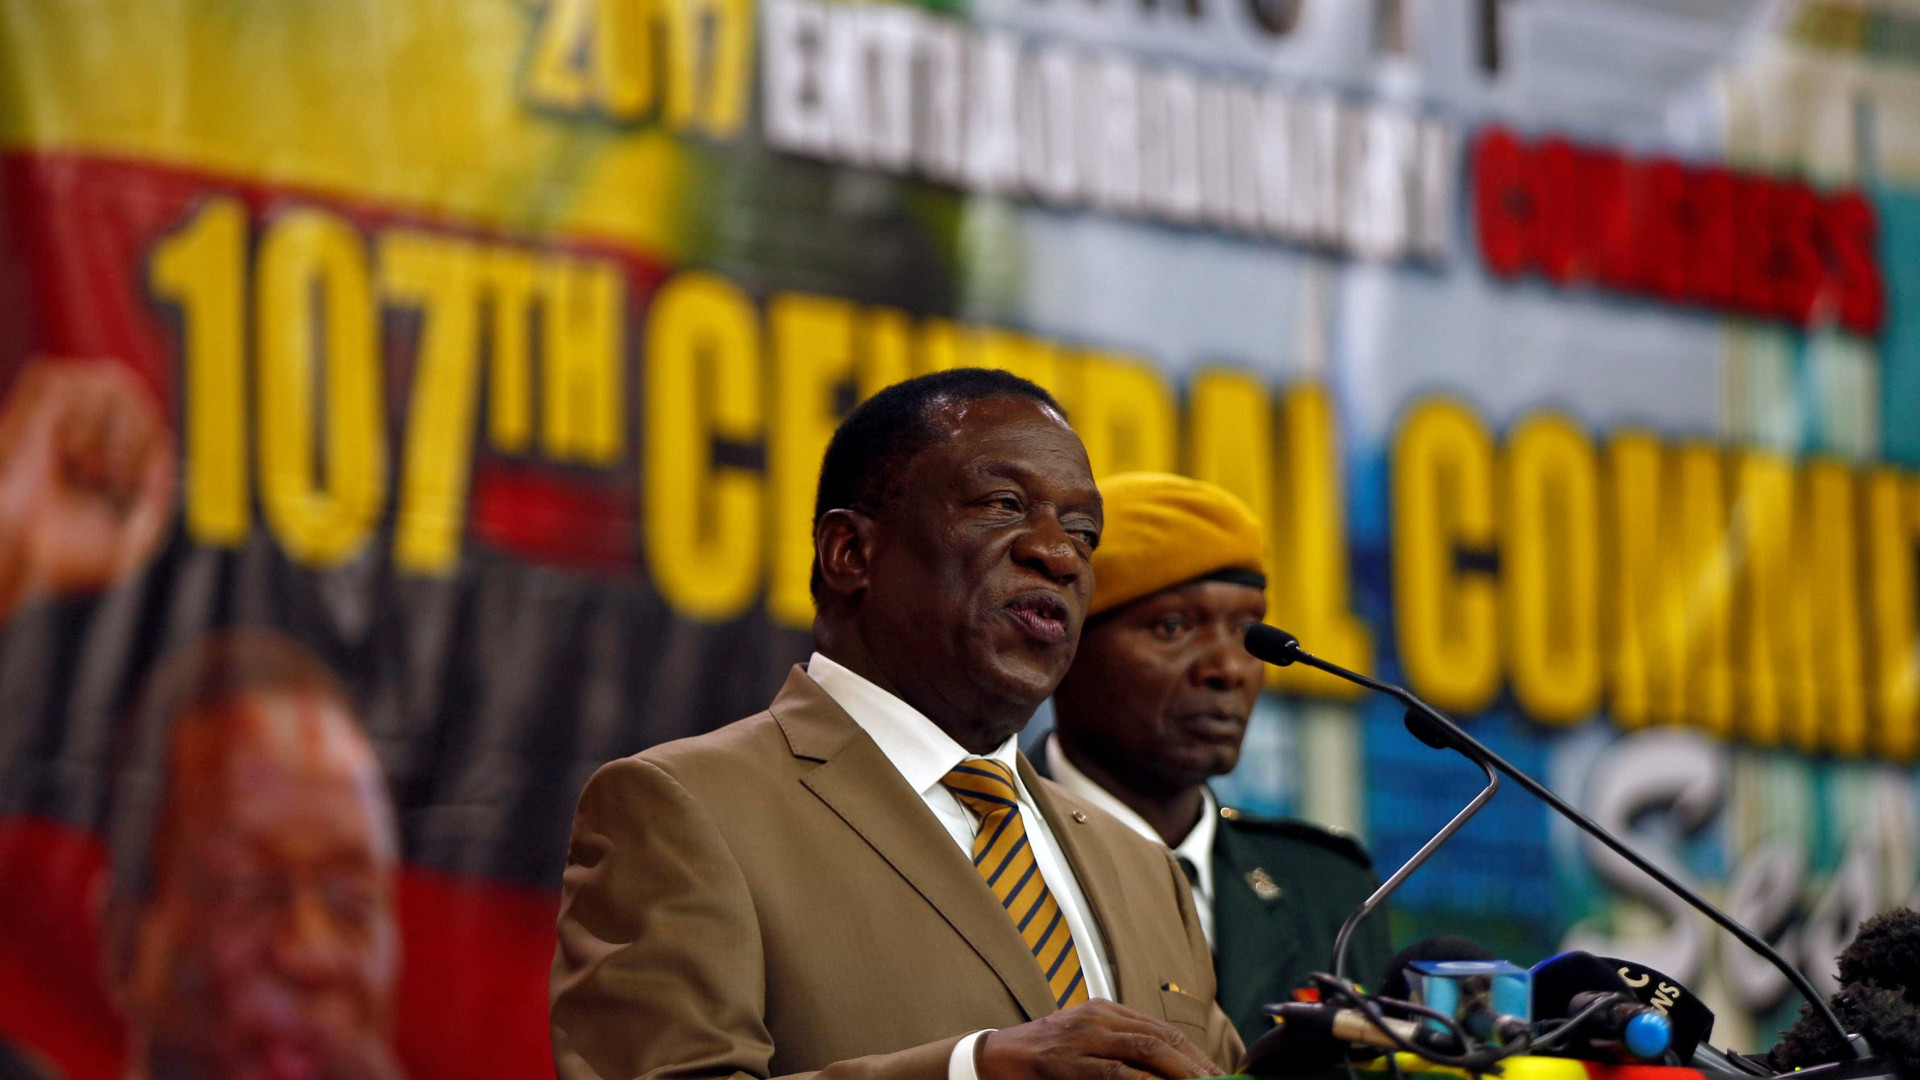 Candidatura de presidente nas eleições de 2018 é confirmada no Zimbábue